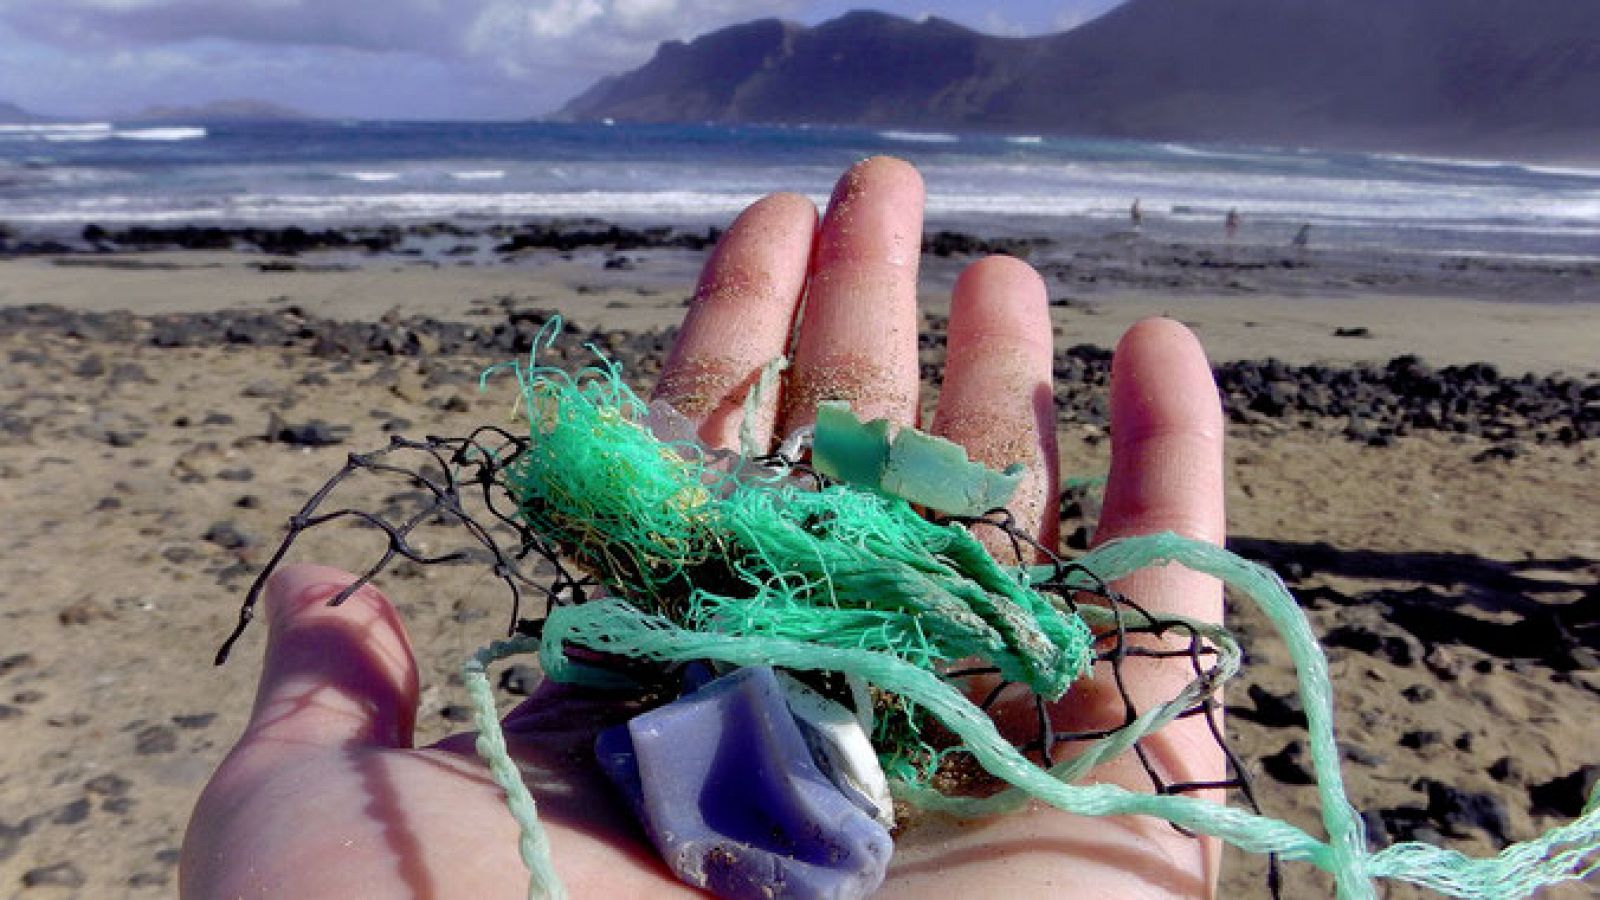 Residuos plásticos recogidos cerca de Caleta de Famara, Lanzarote, por la investigadora principal del estudio Jenna Jambeck.